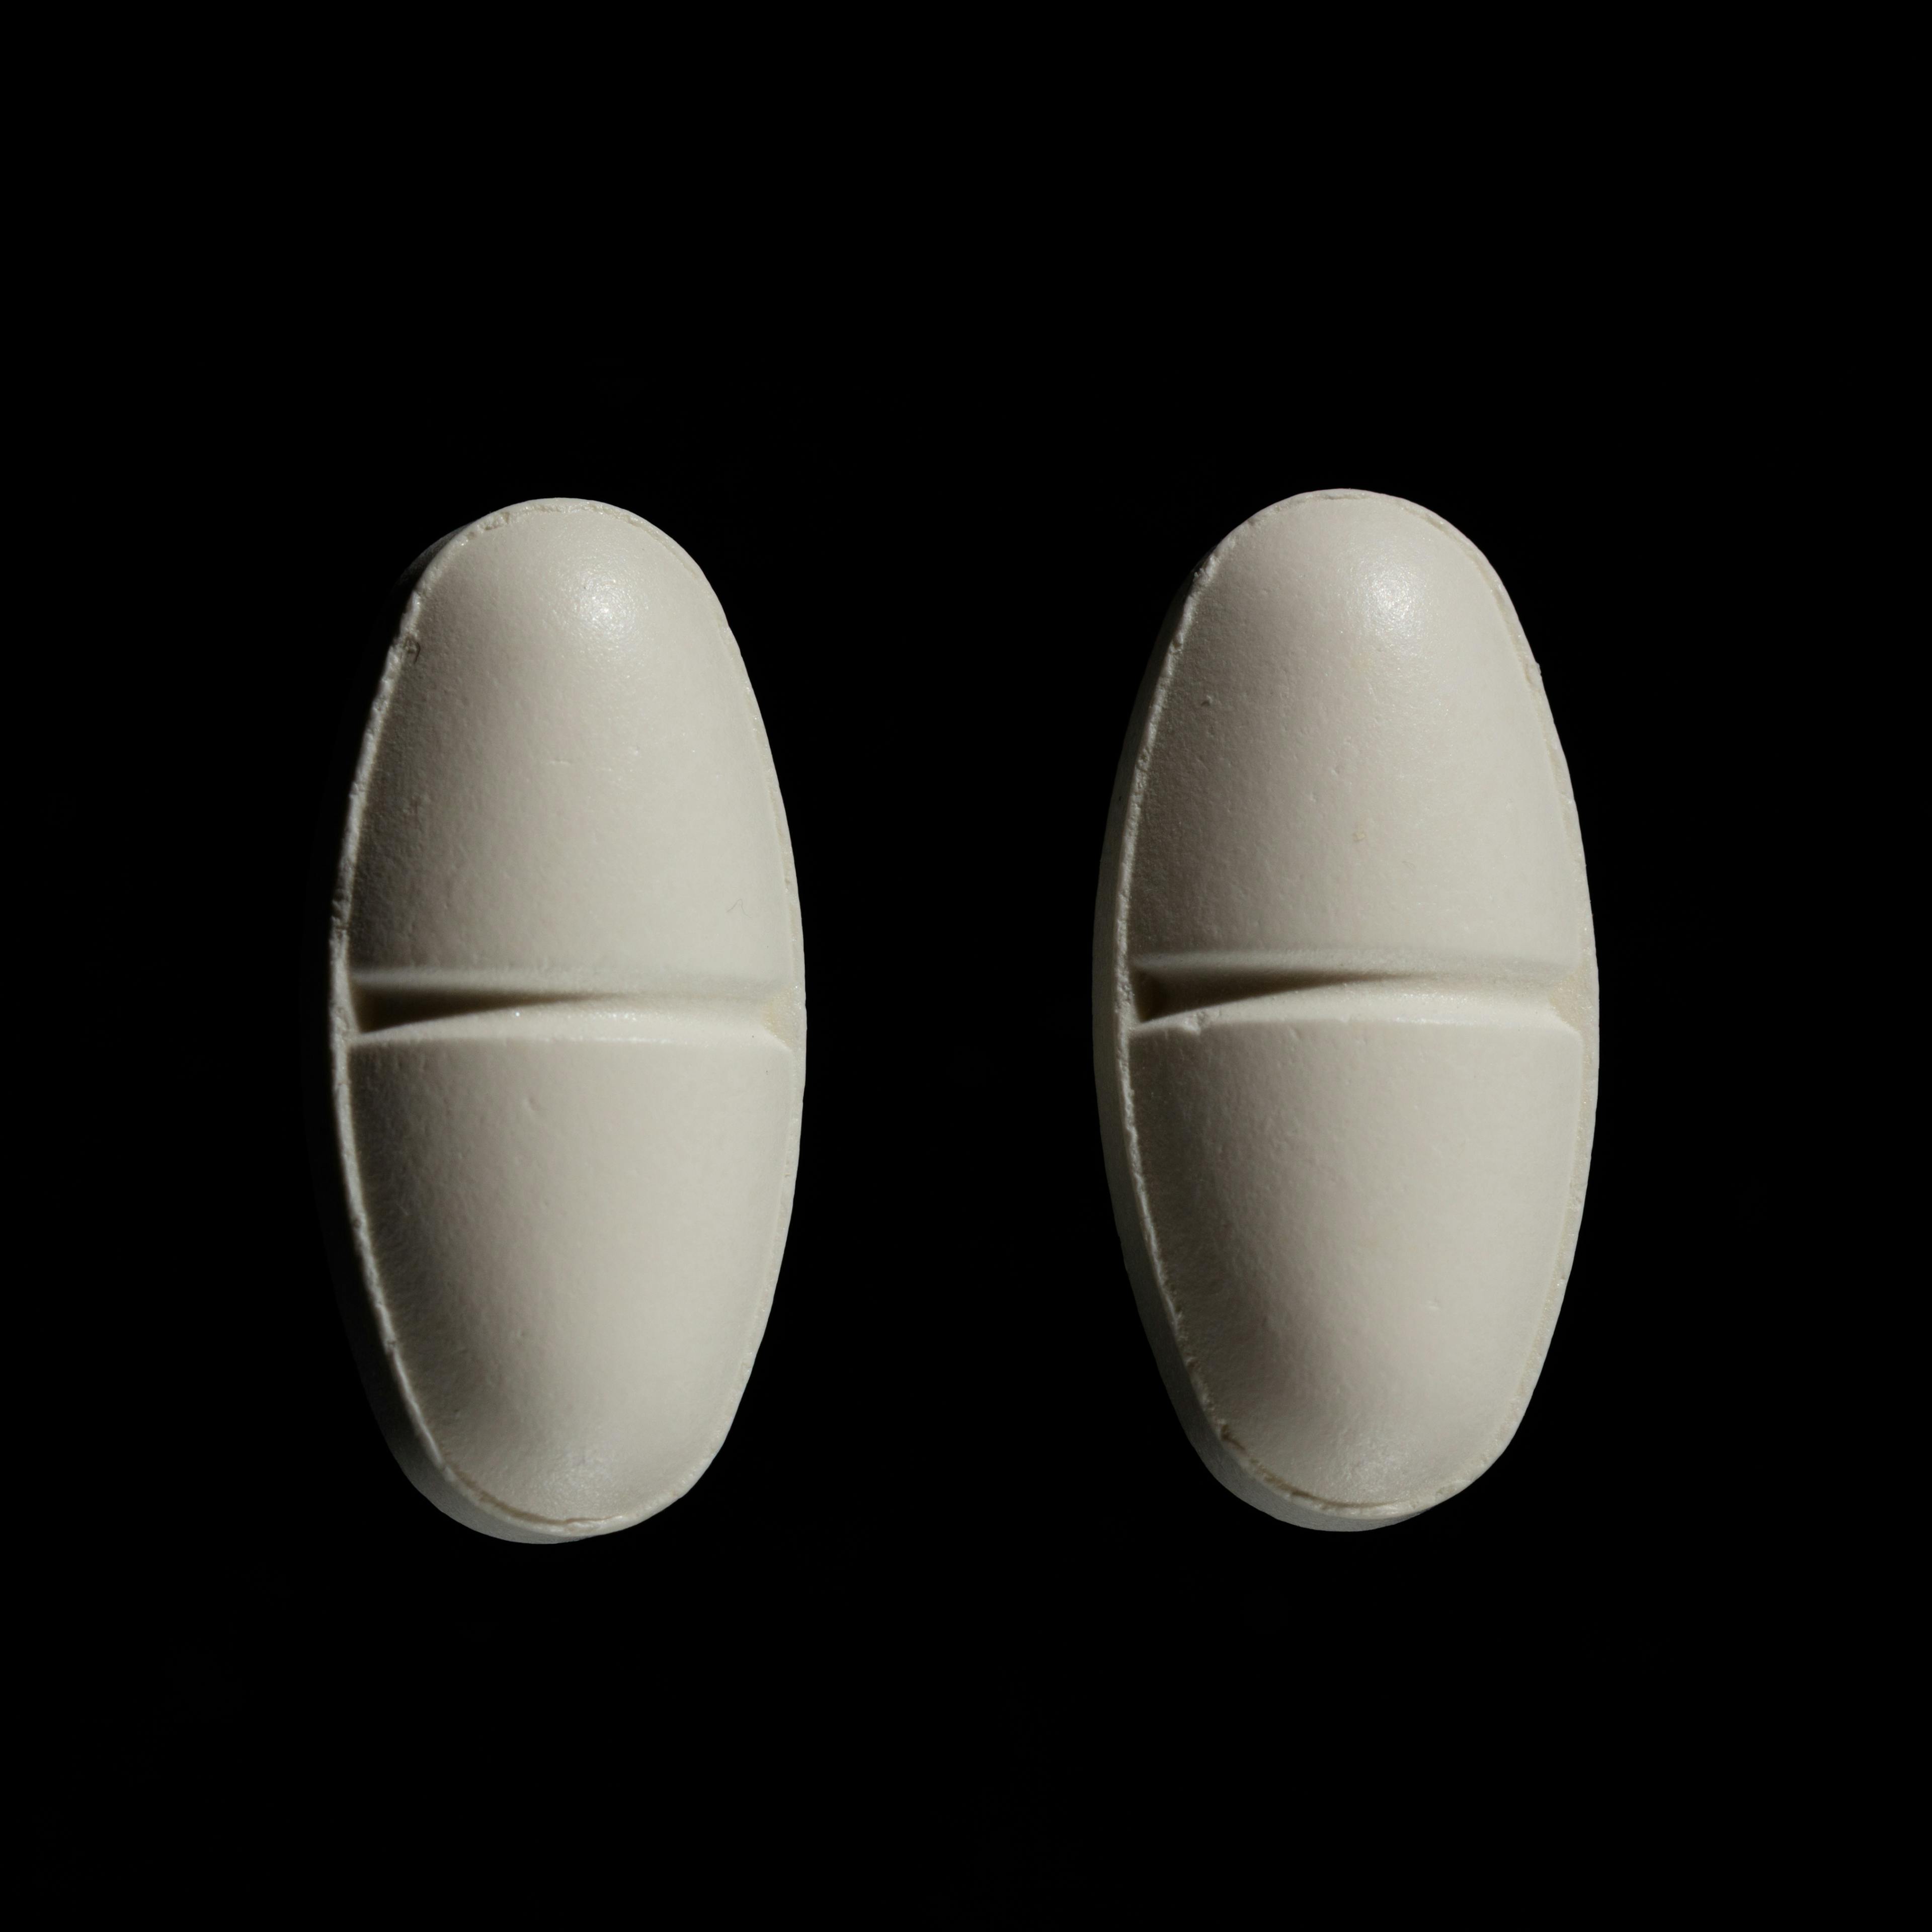 Amoxin 750 mg